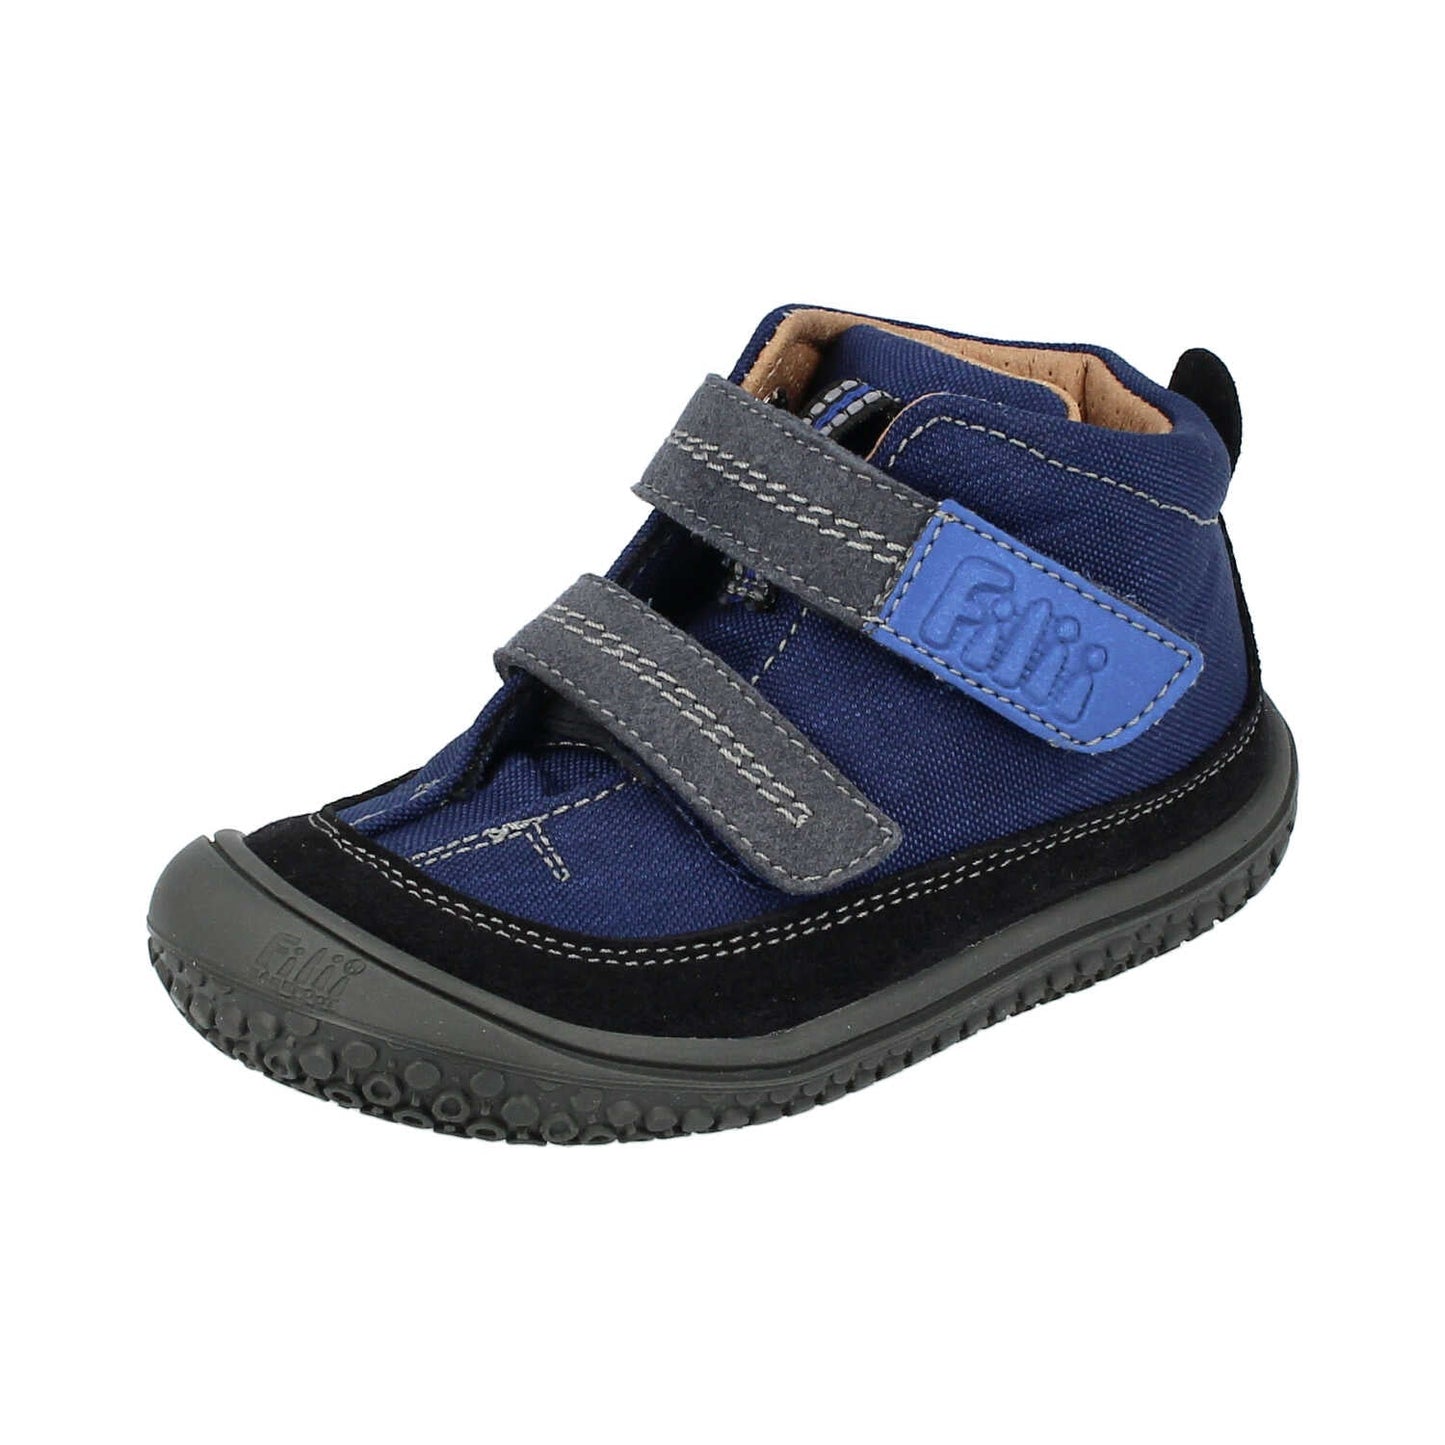 Filii Viper Velcro "Medium" barfods high sneakers til børn i farven ocean, vinklet